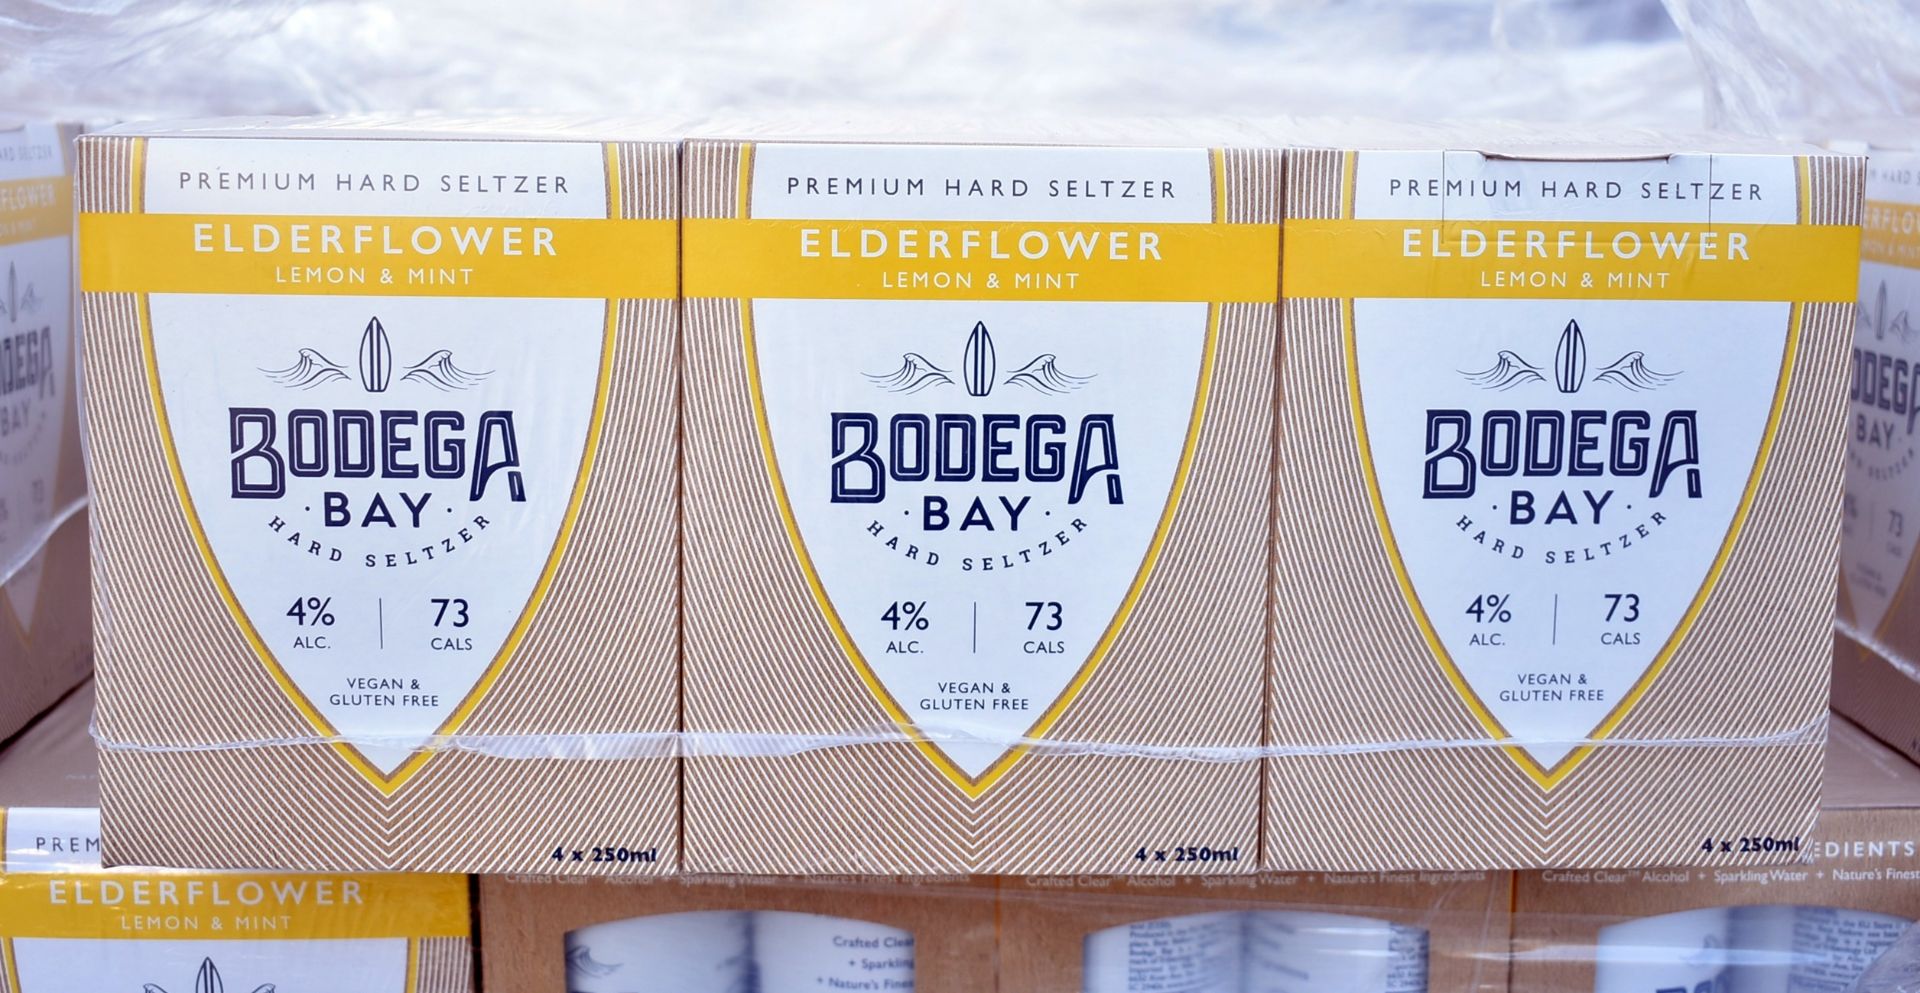 24 x Bodega Bay Hard Seltzer 250ml Alcoholic Sparkling Water Drinks - Elderflower Lemon & Mint - - Image 3 of 10